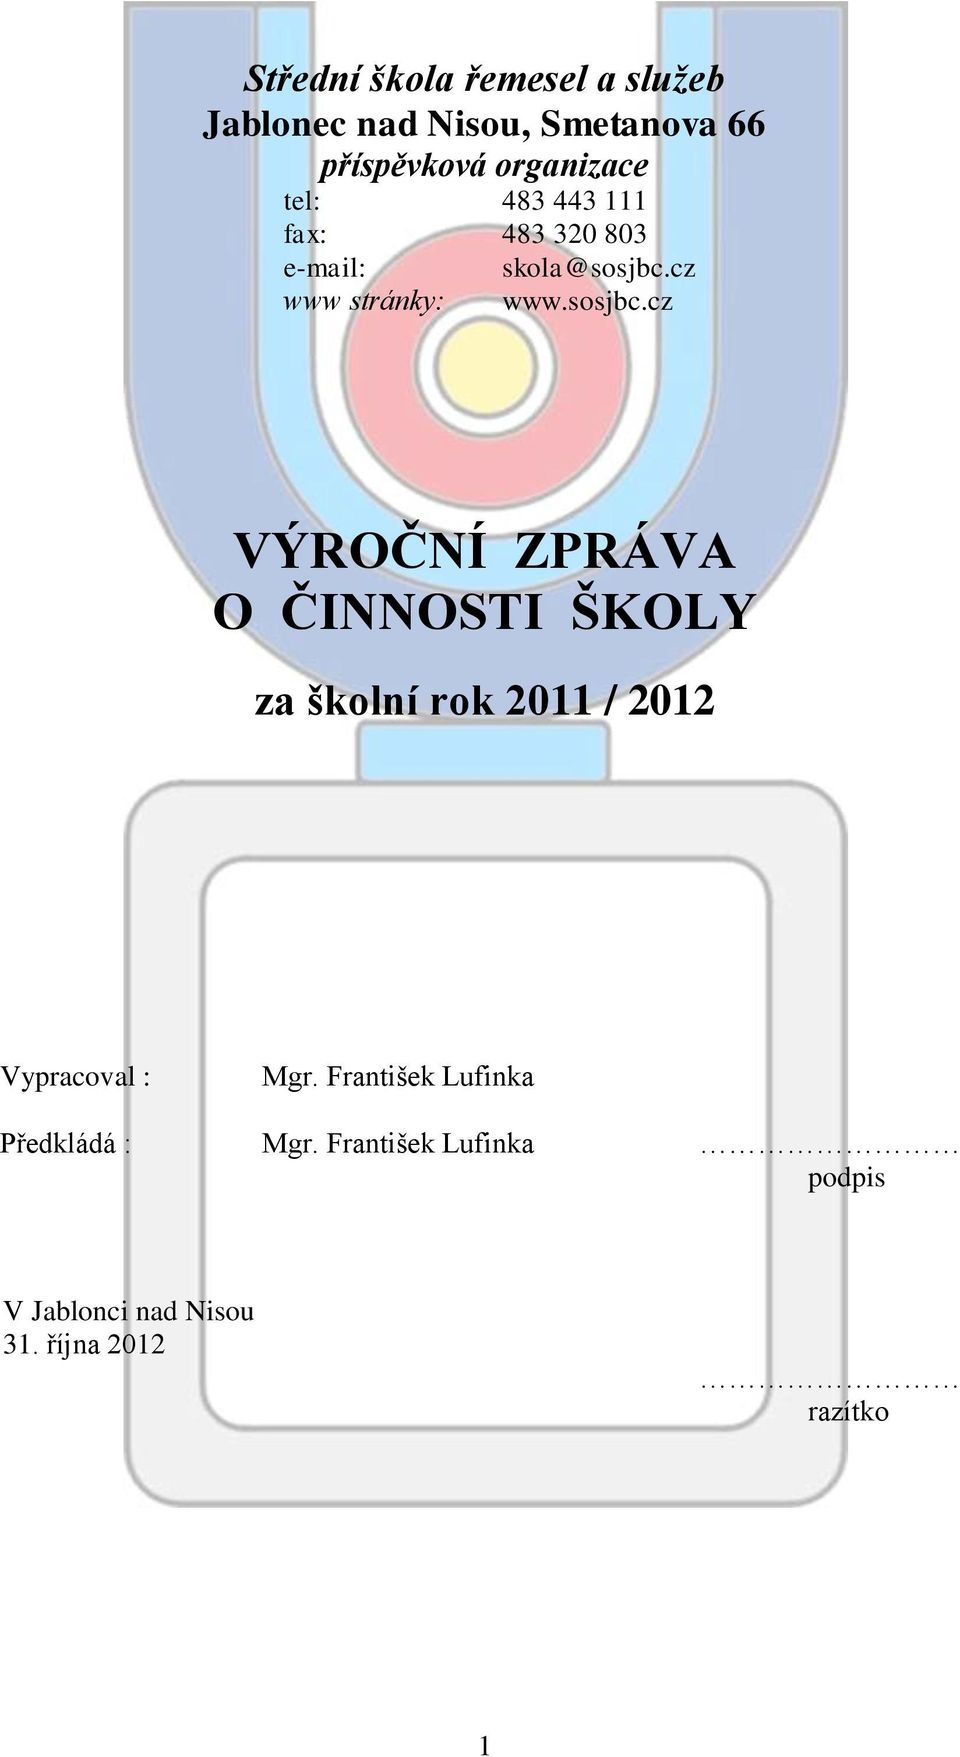 cz www stránky: www.sosjbc.